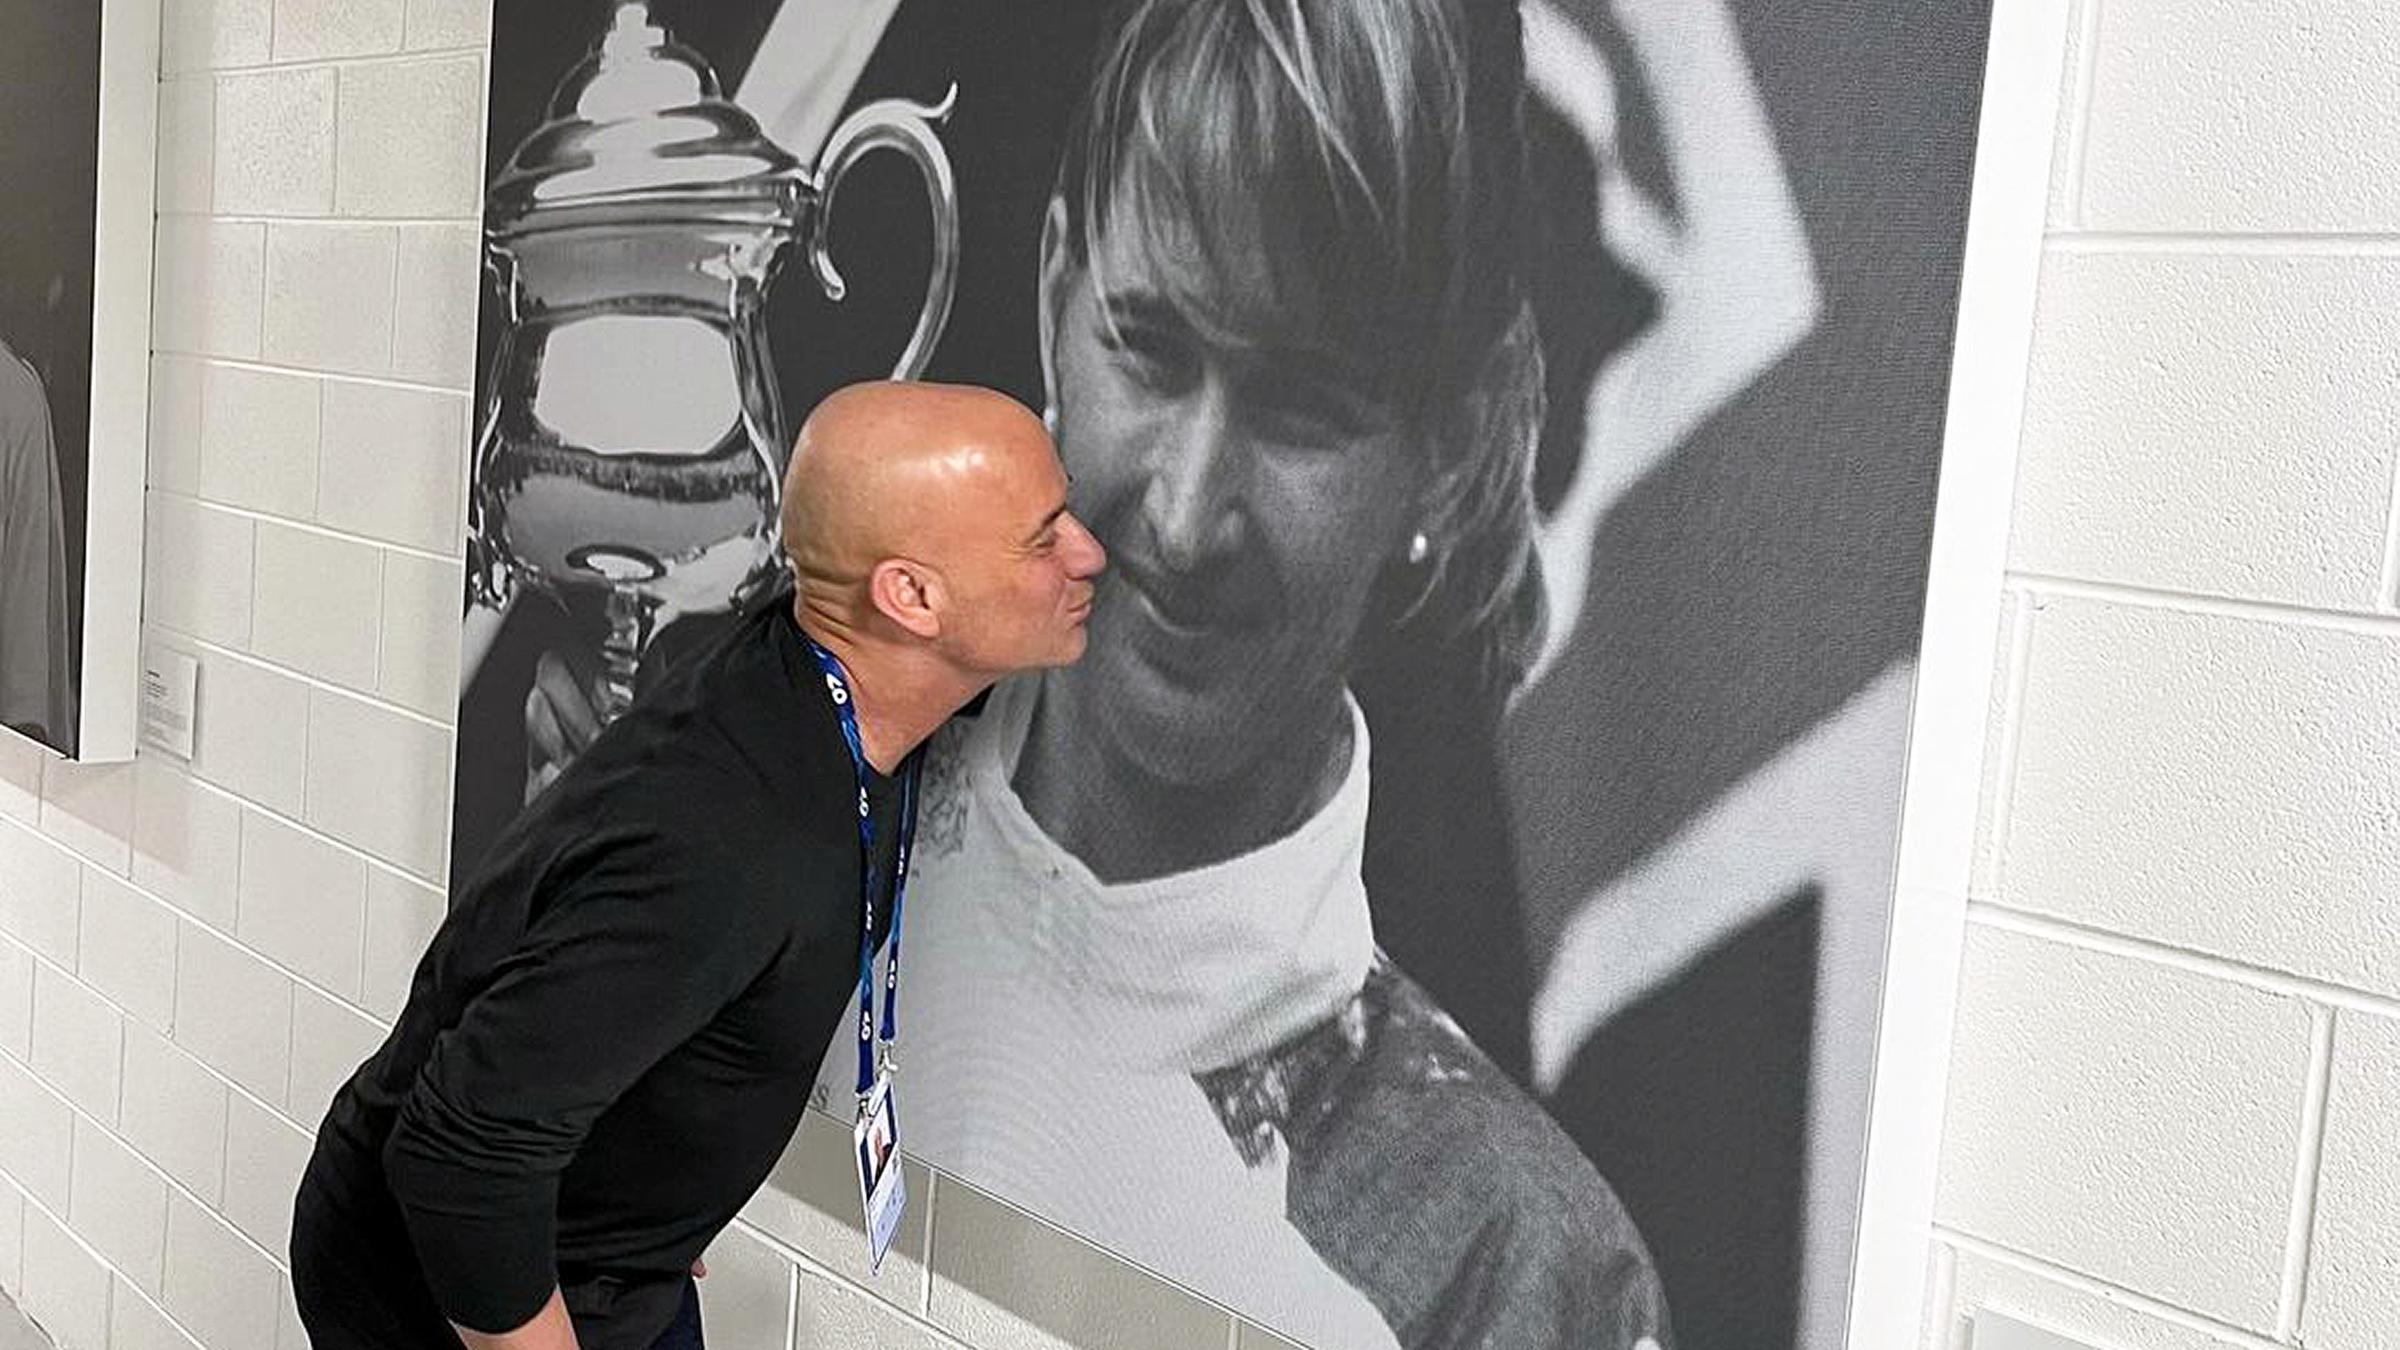 Andre Agassi küsst symbolisch ein Plakat, auf dem Steffi Graf abgebildet ist